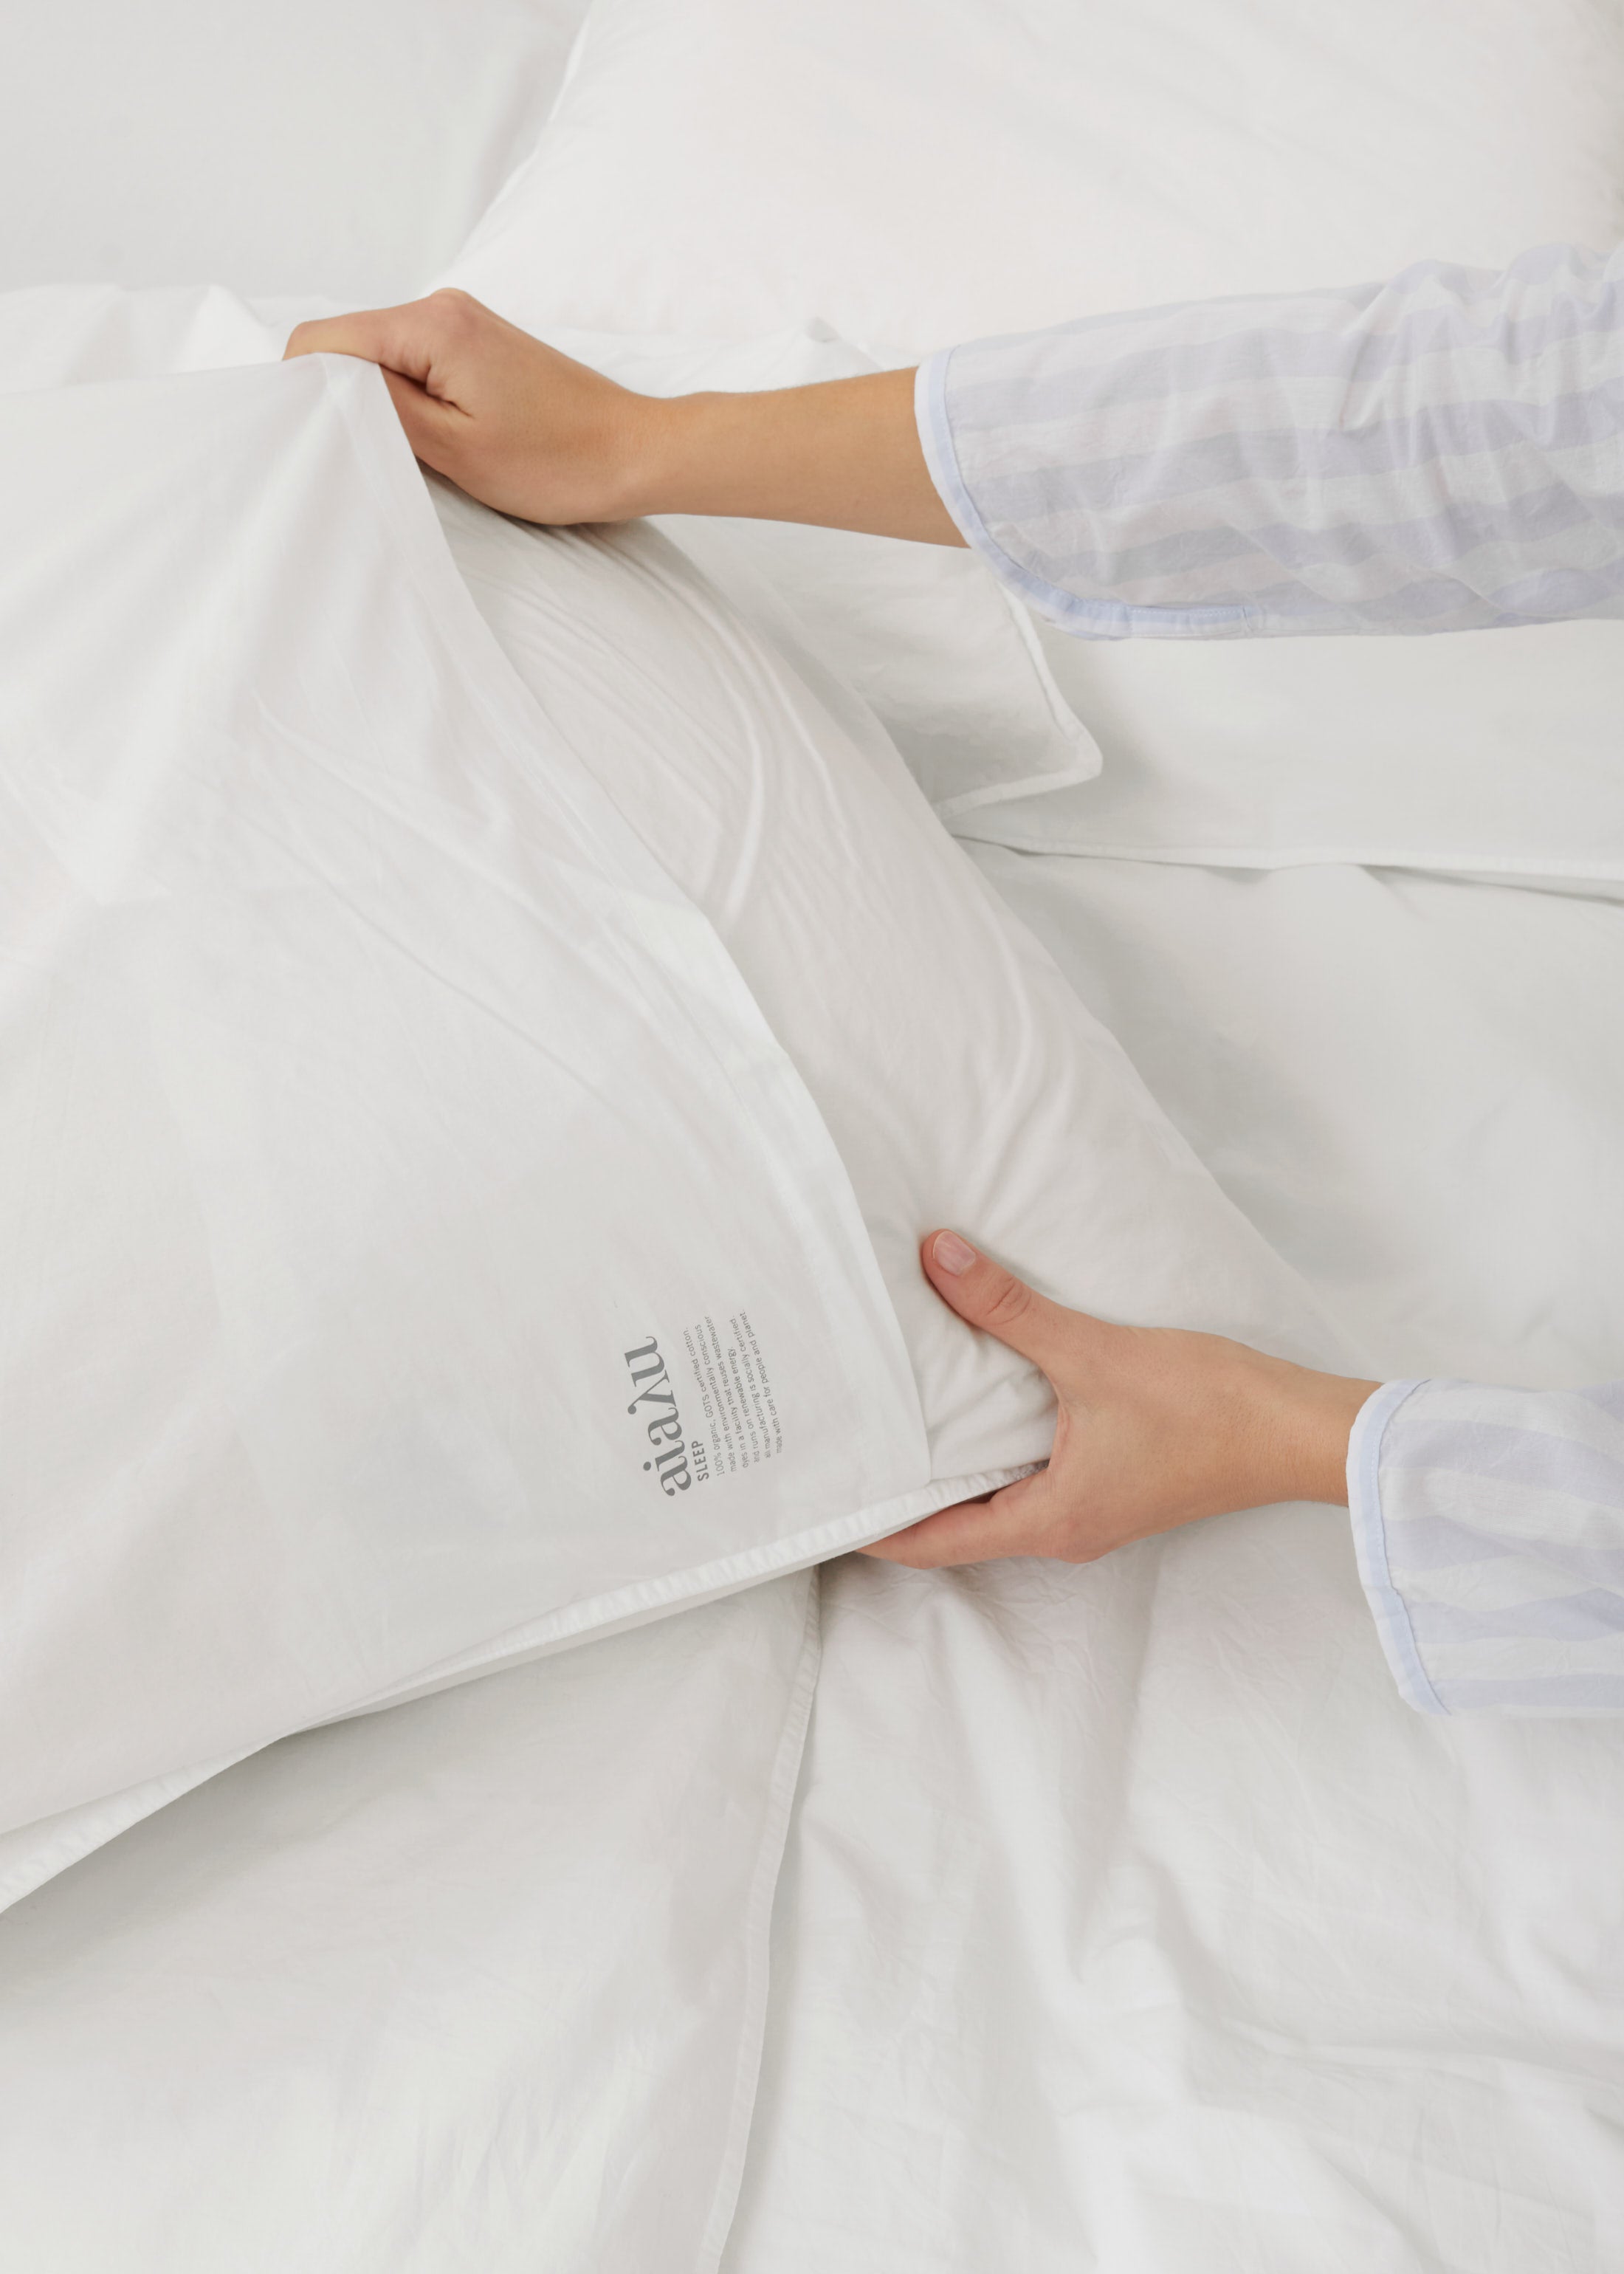 Pillow case 60x63 - white | White